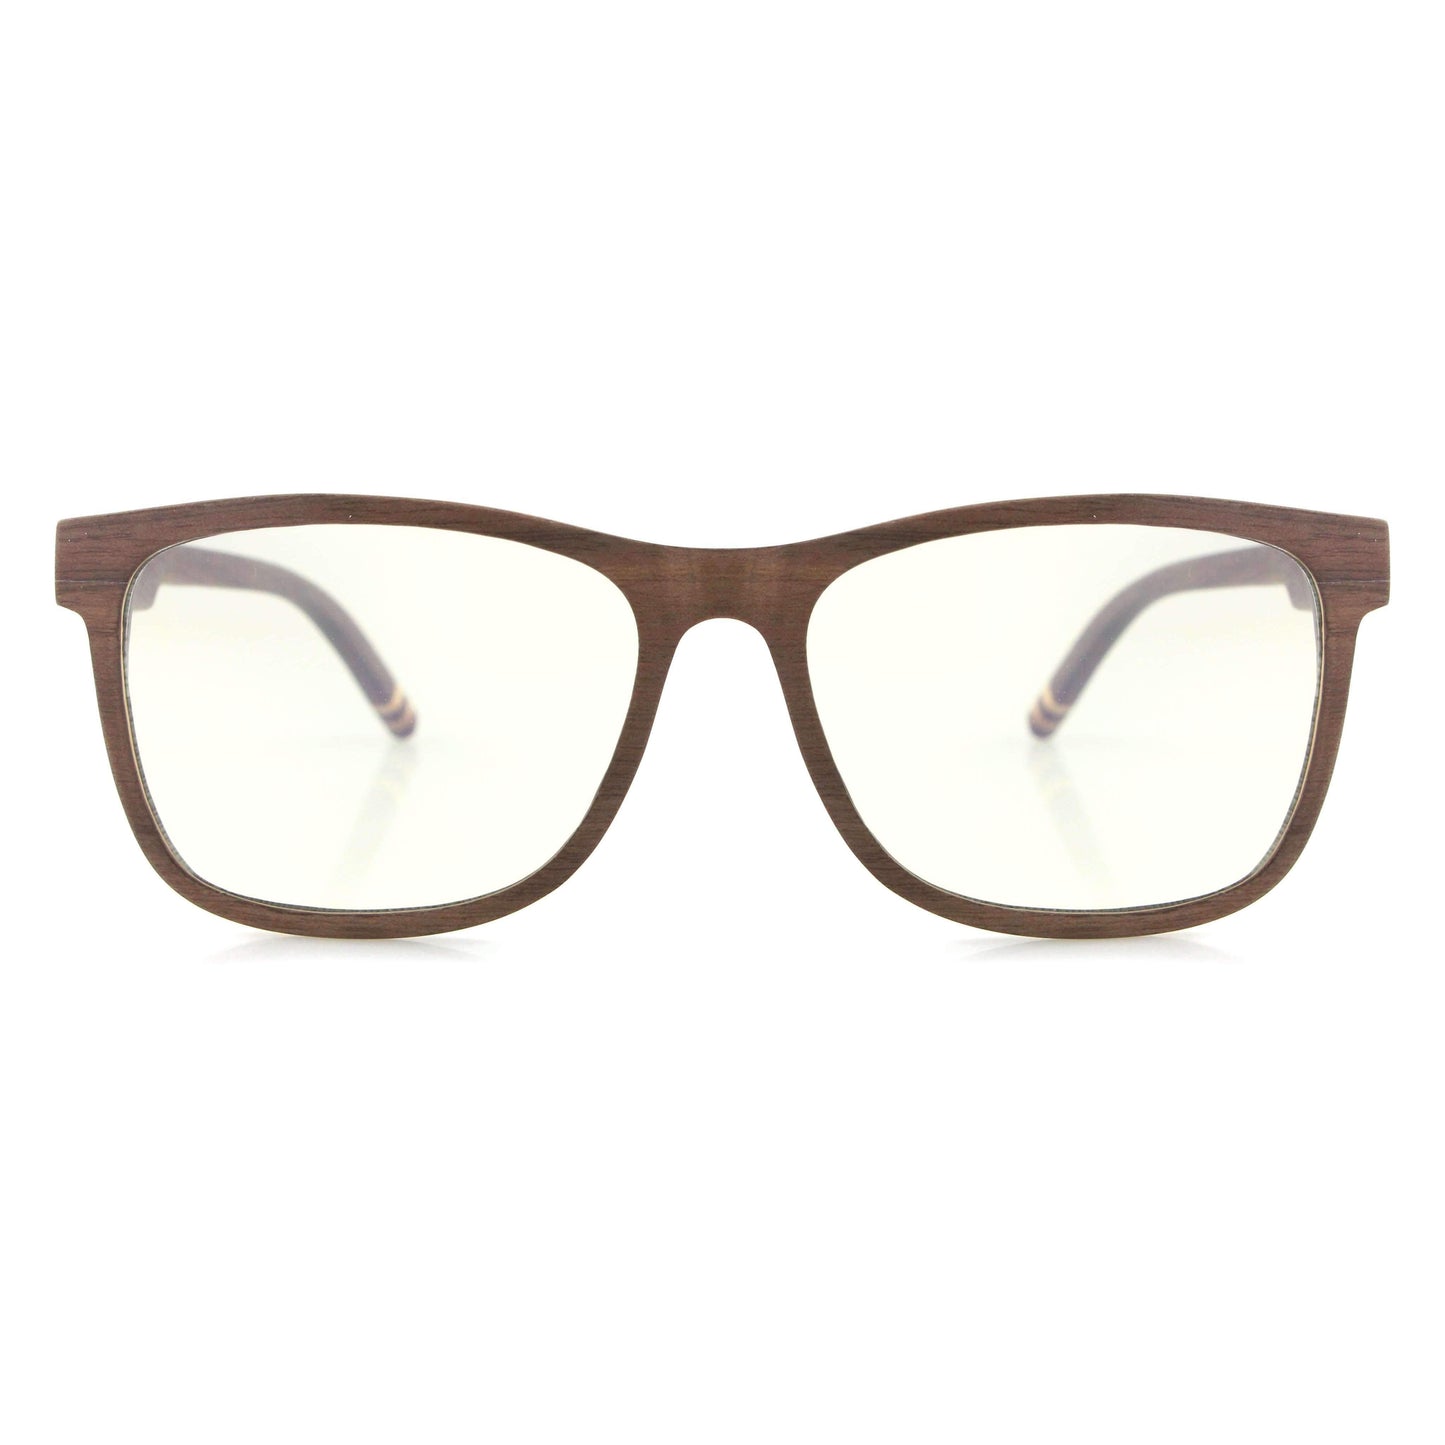 Vilo Bluelight Wooden Glasses - Cortez: